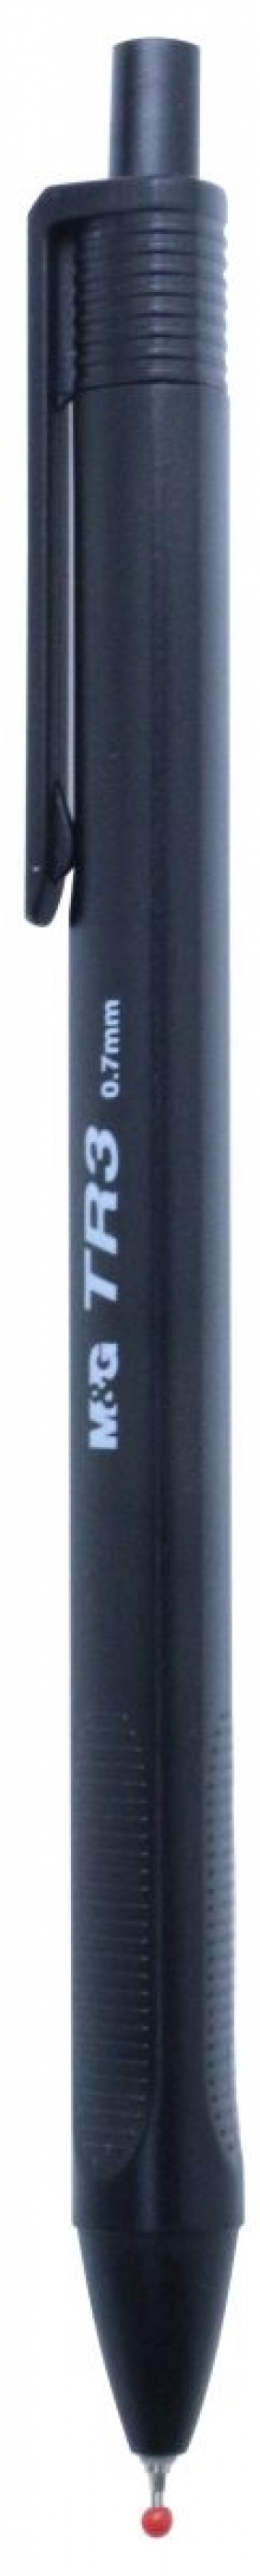 Długopis M&G żelowy (MG ABPW3072-9 KP40)